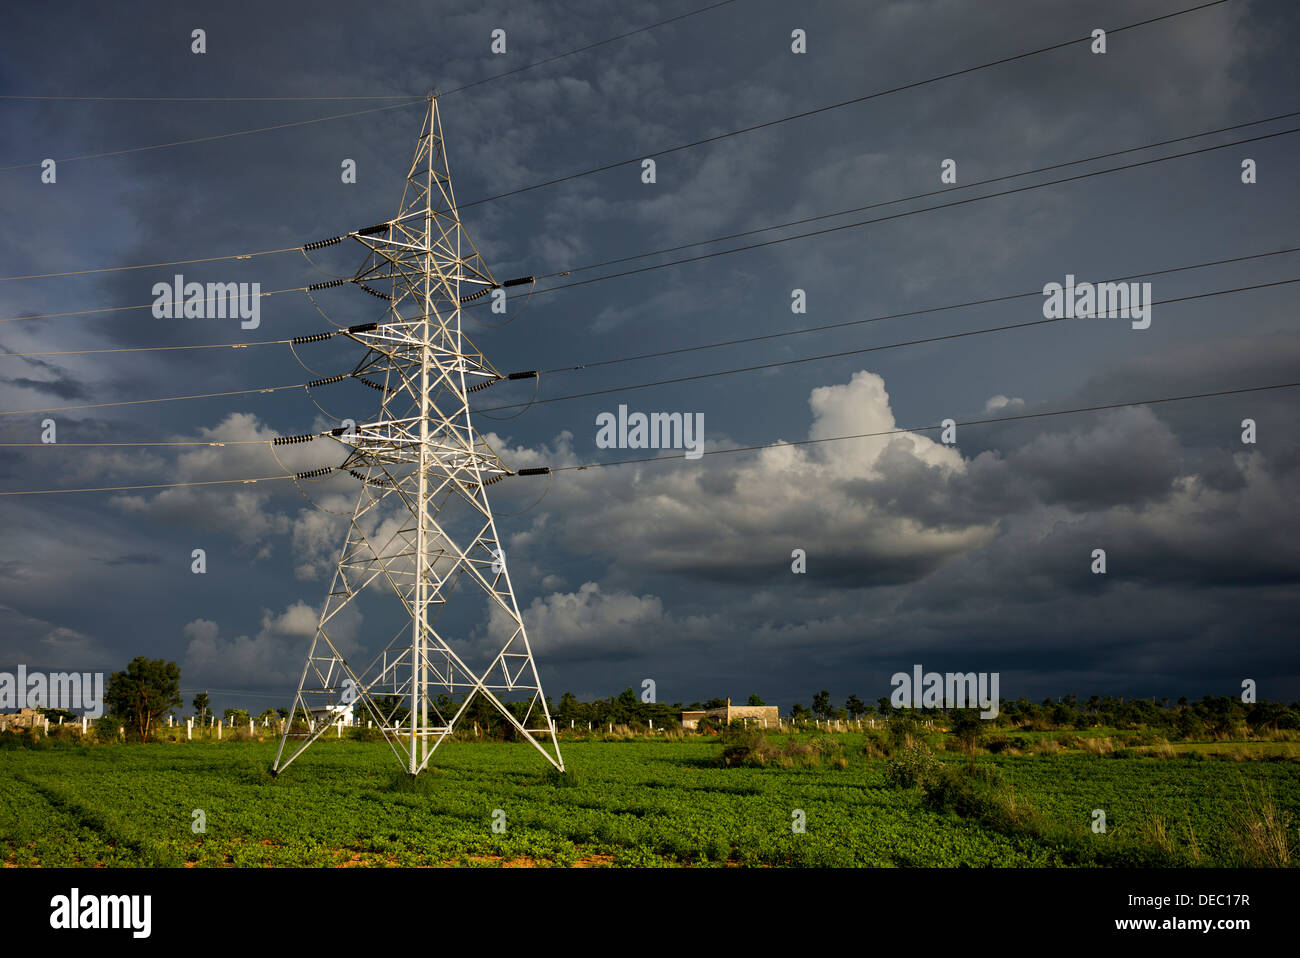 Strommasten und Kabel in der indischen Landschaft gegen einen dunklen Gewitterhimmel. Andhra Pradesh, Indien Stockfoto